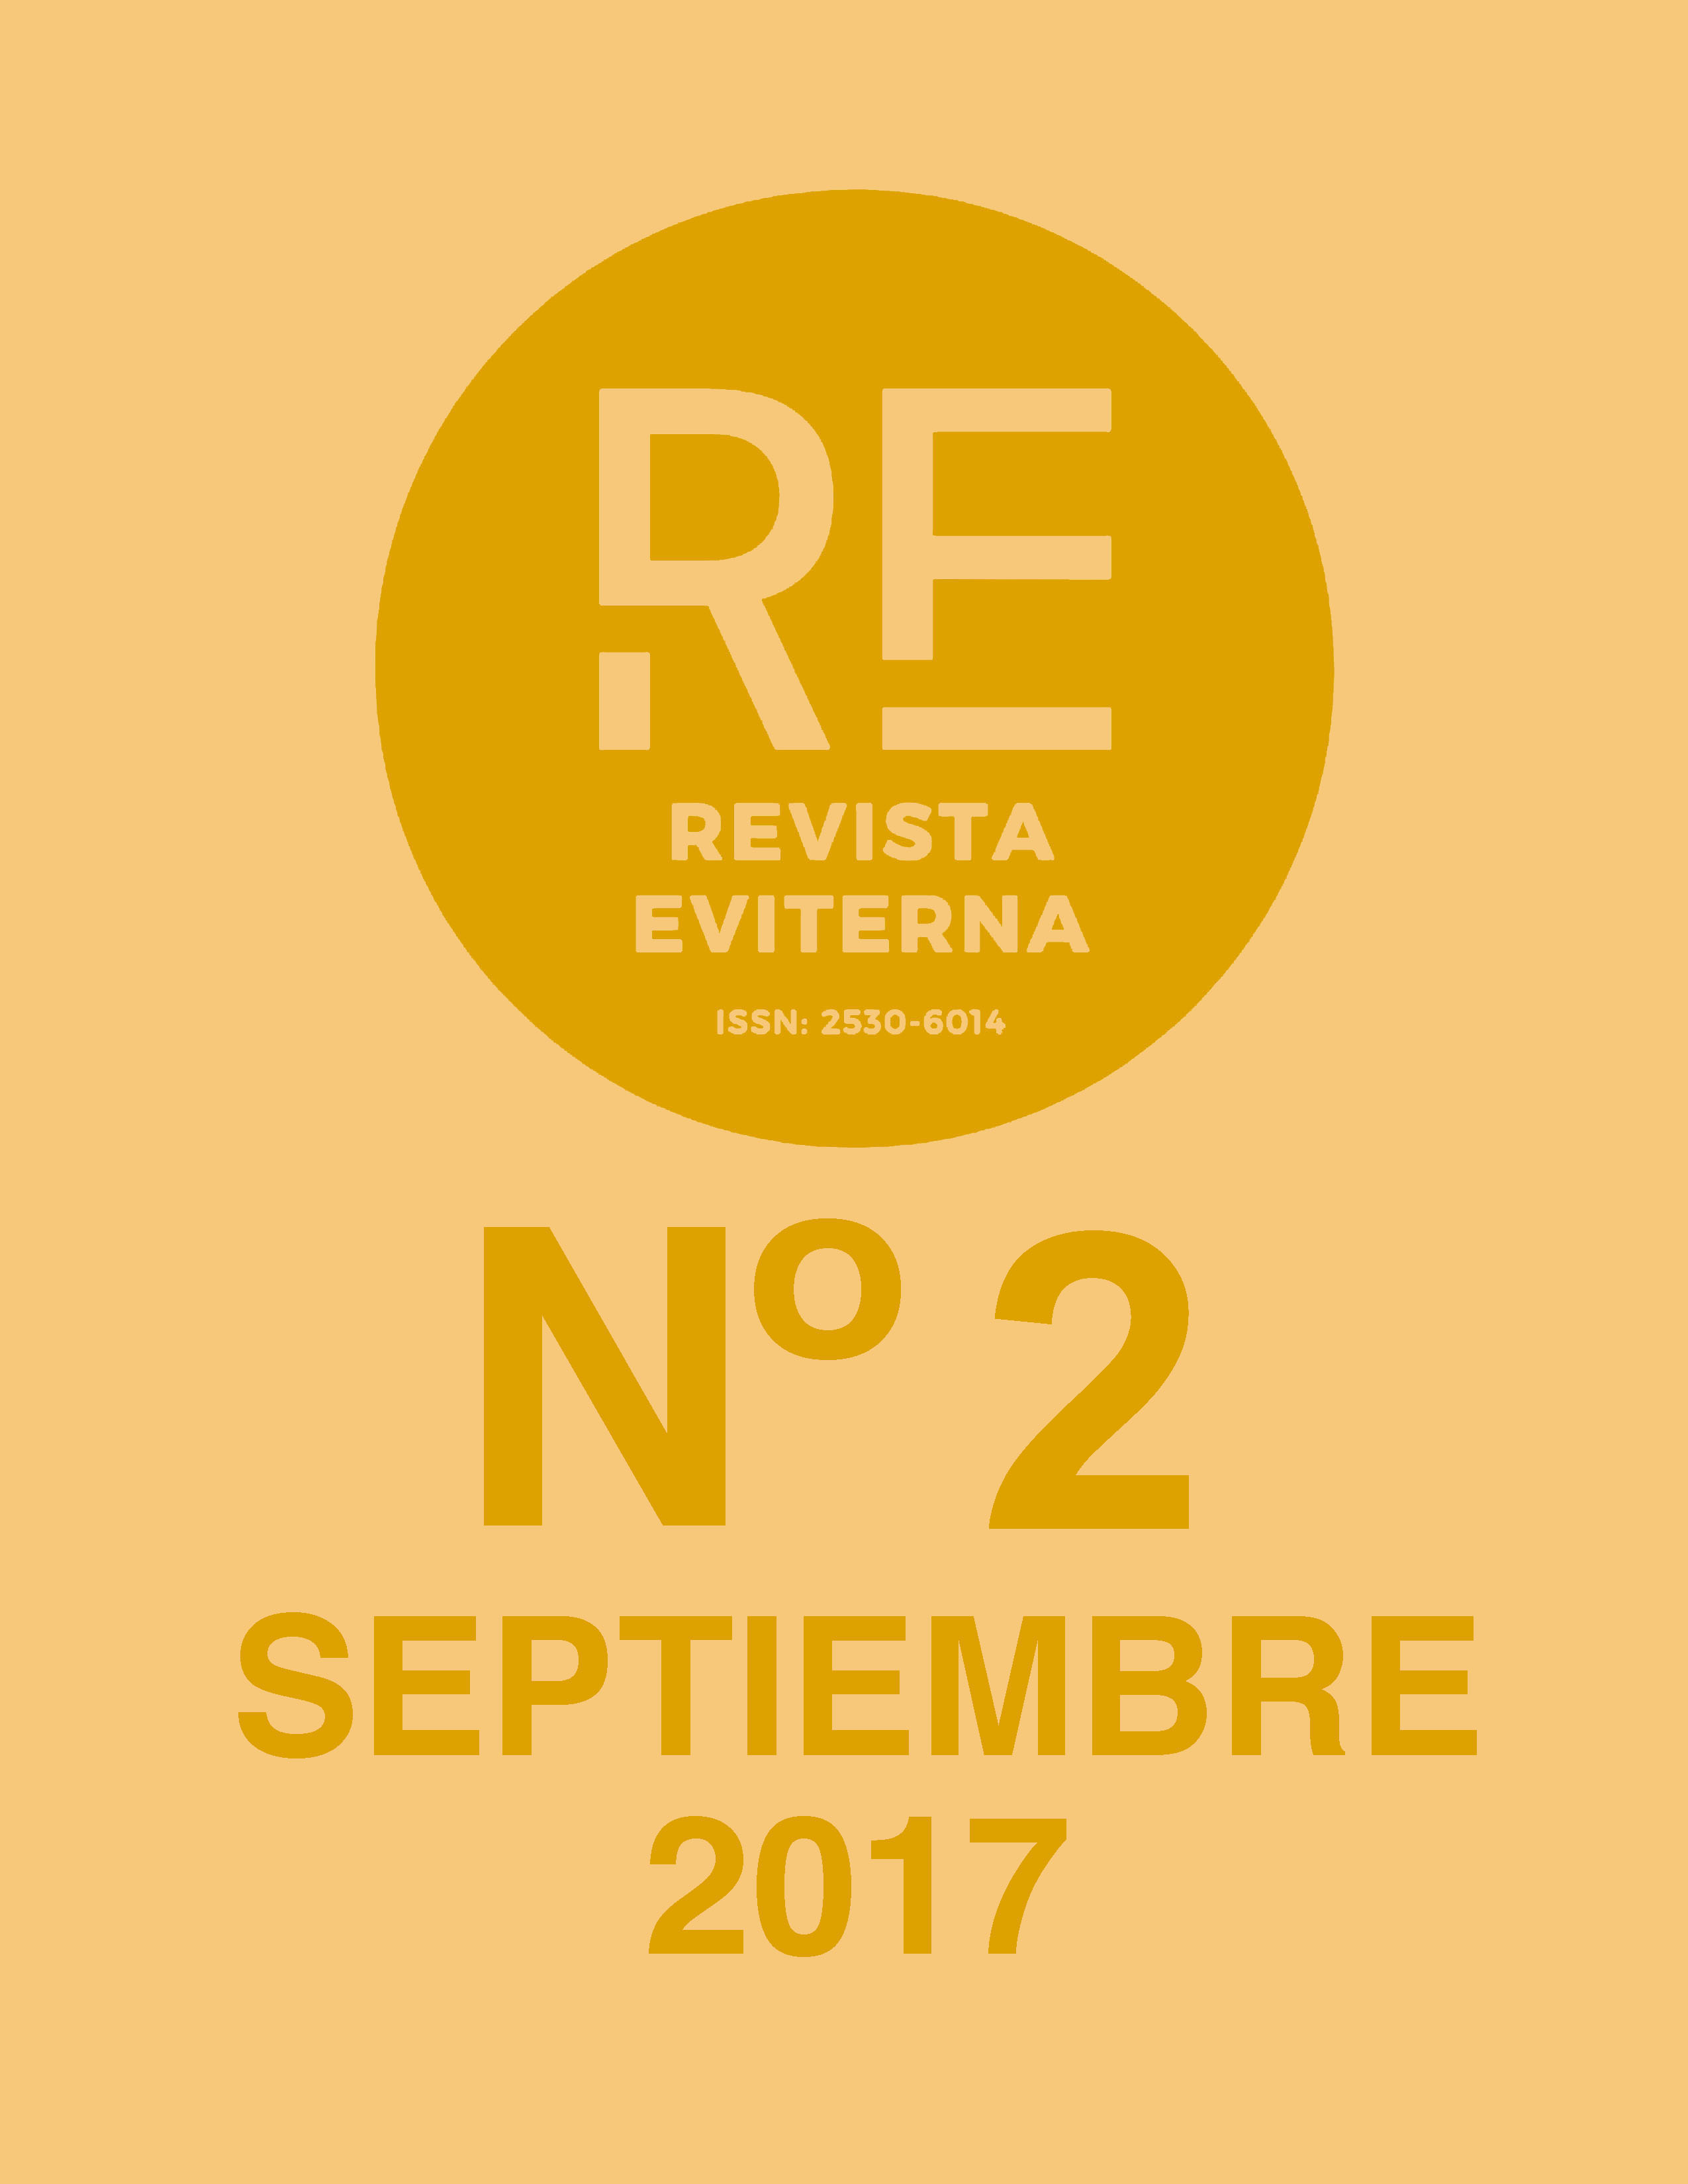 					Ver Núm. 2 (2017): Revista Eviterna Nº 2, septiembre 2017
				